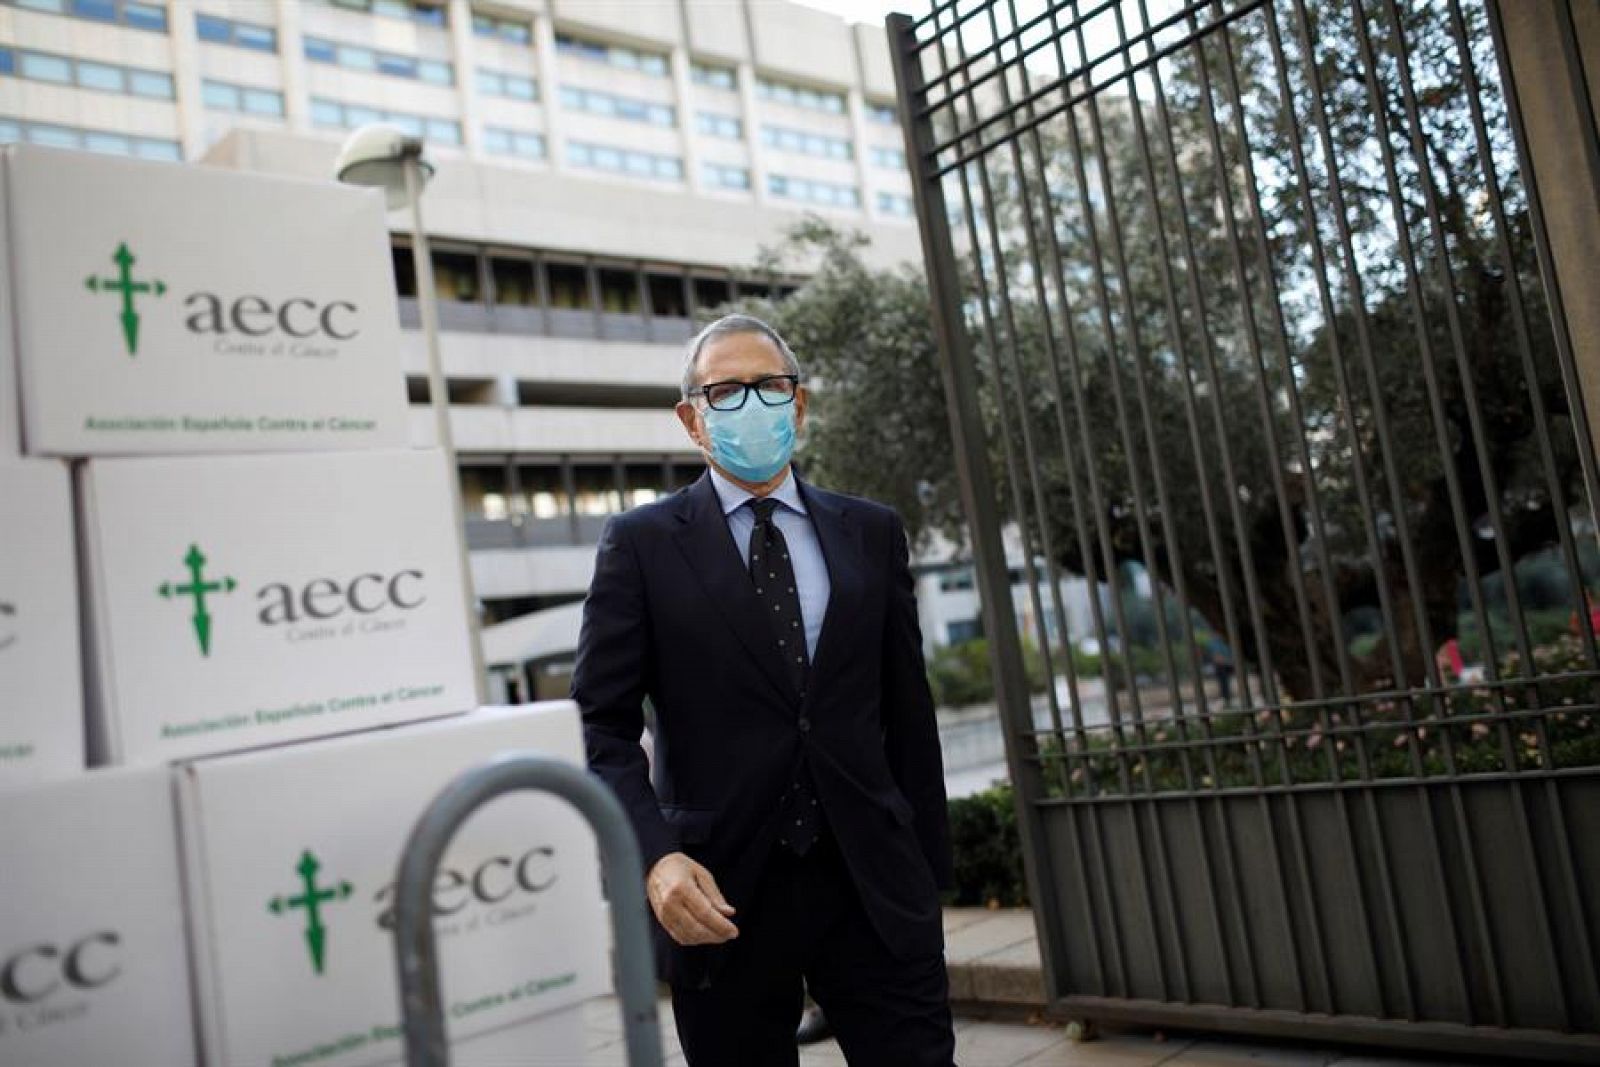 El presidente de la Asociación Española contra el Cancer (AECC), Ramón Reyes, fotografiado delante del Ministerio de Ciencia en Madrid